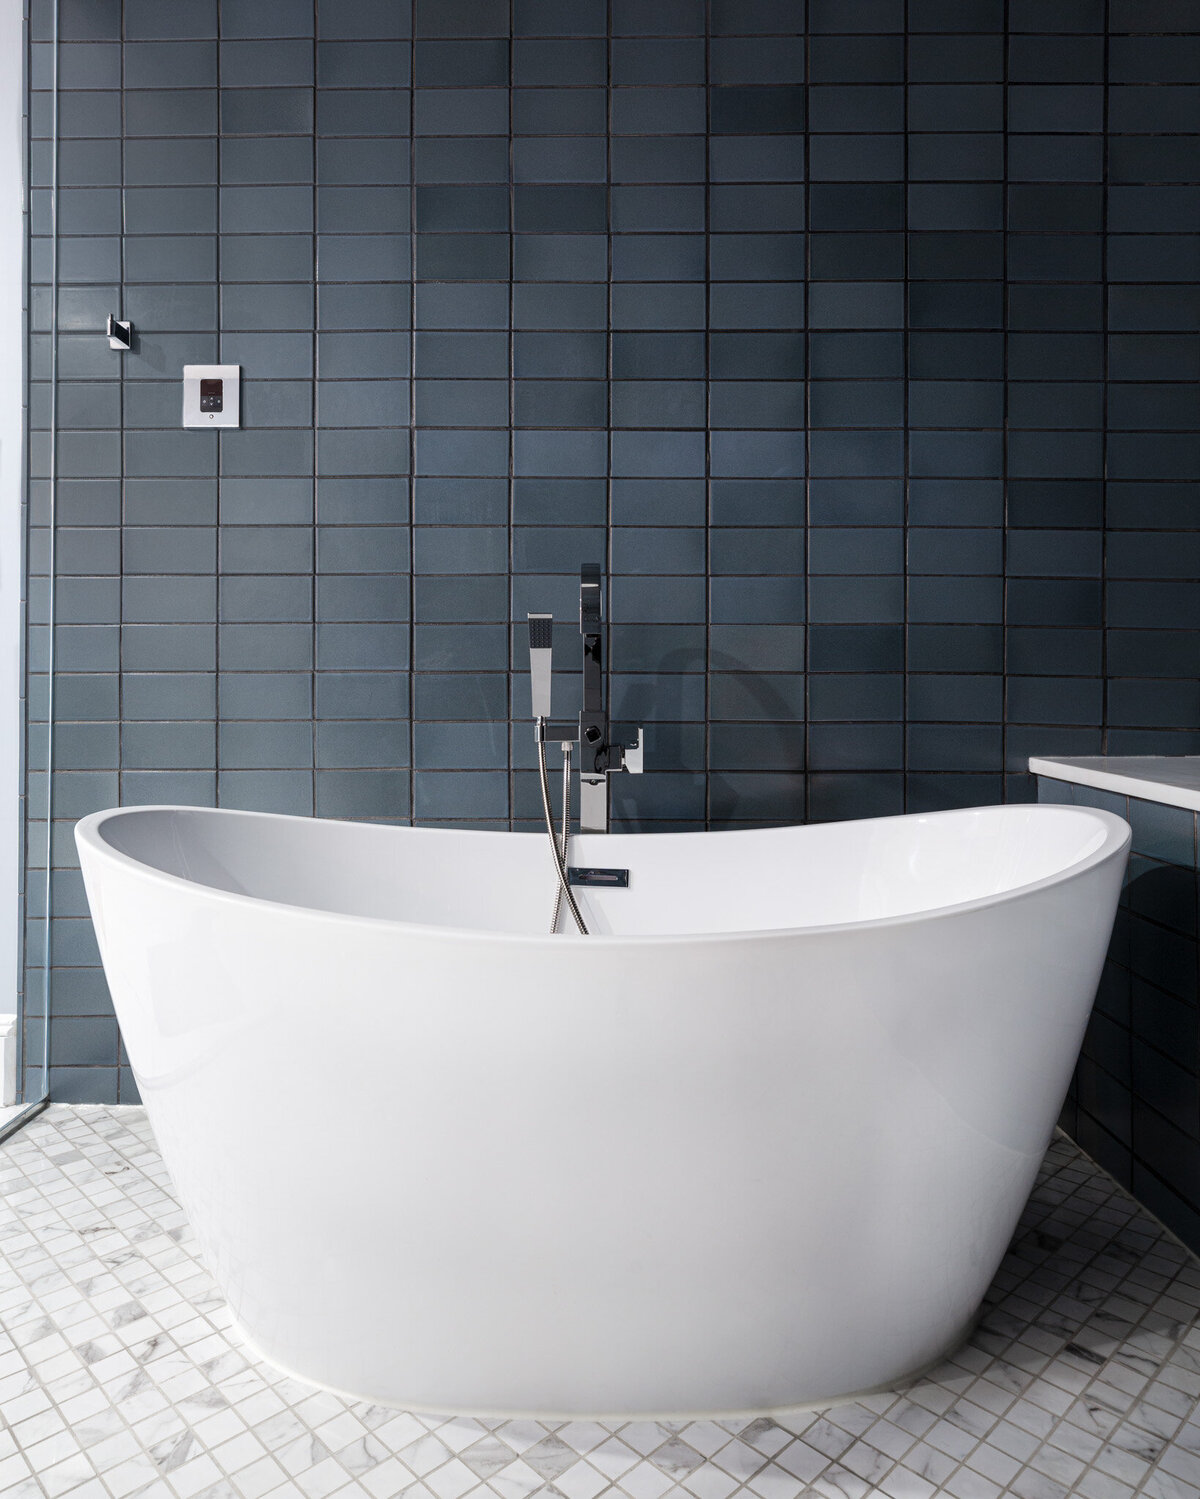 LBC-Design-Bathrooms-05